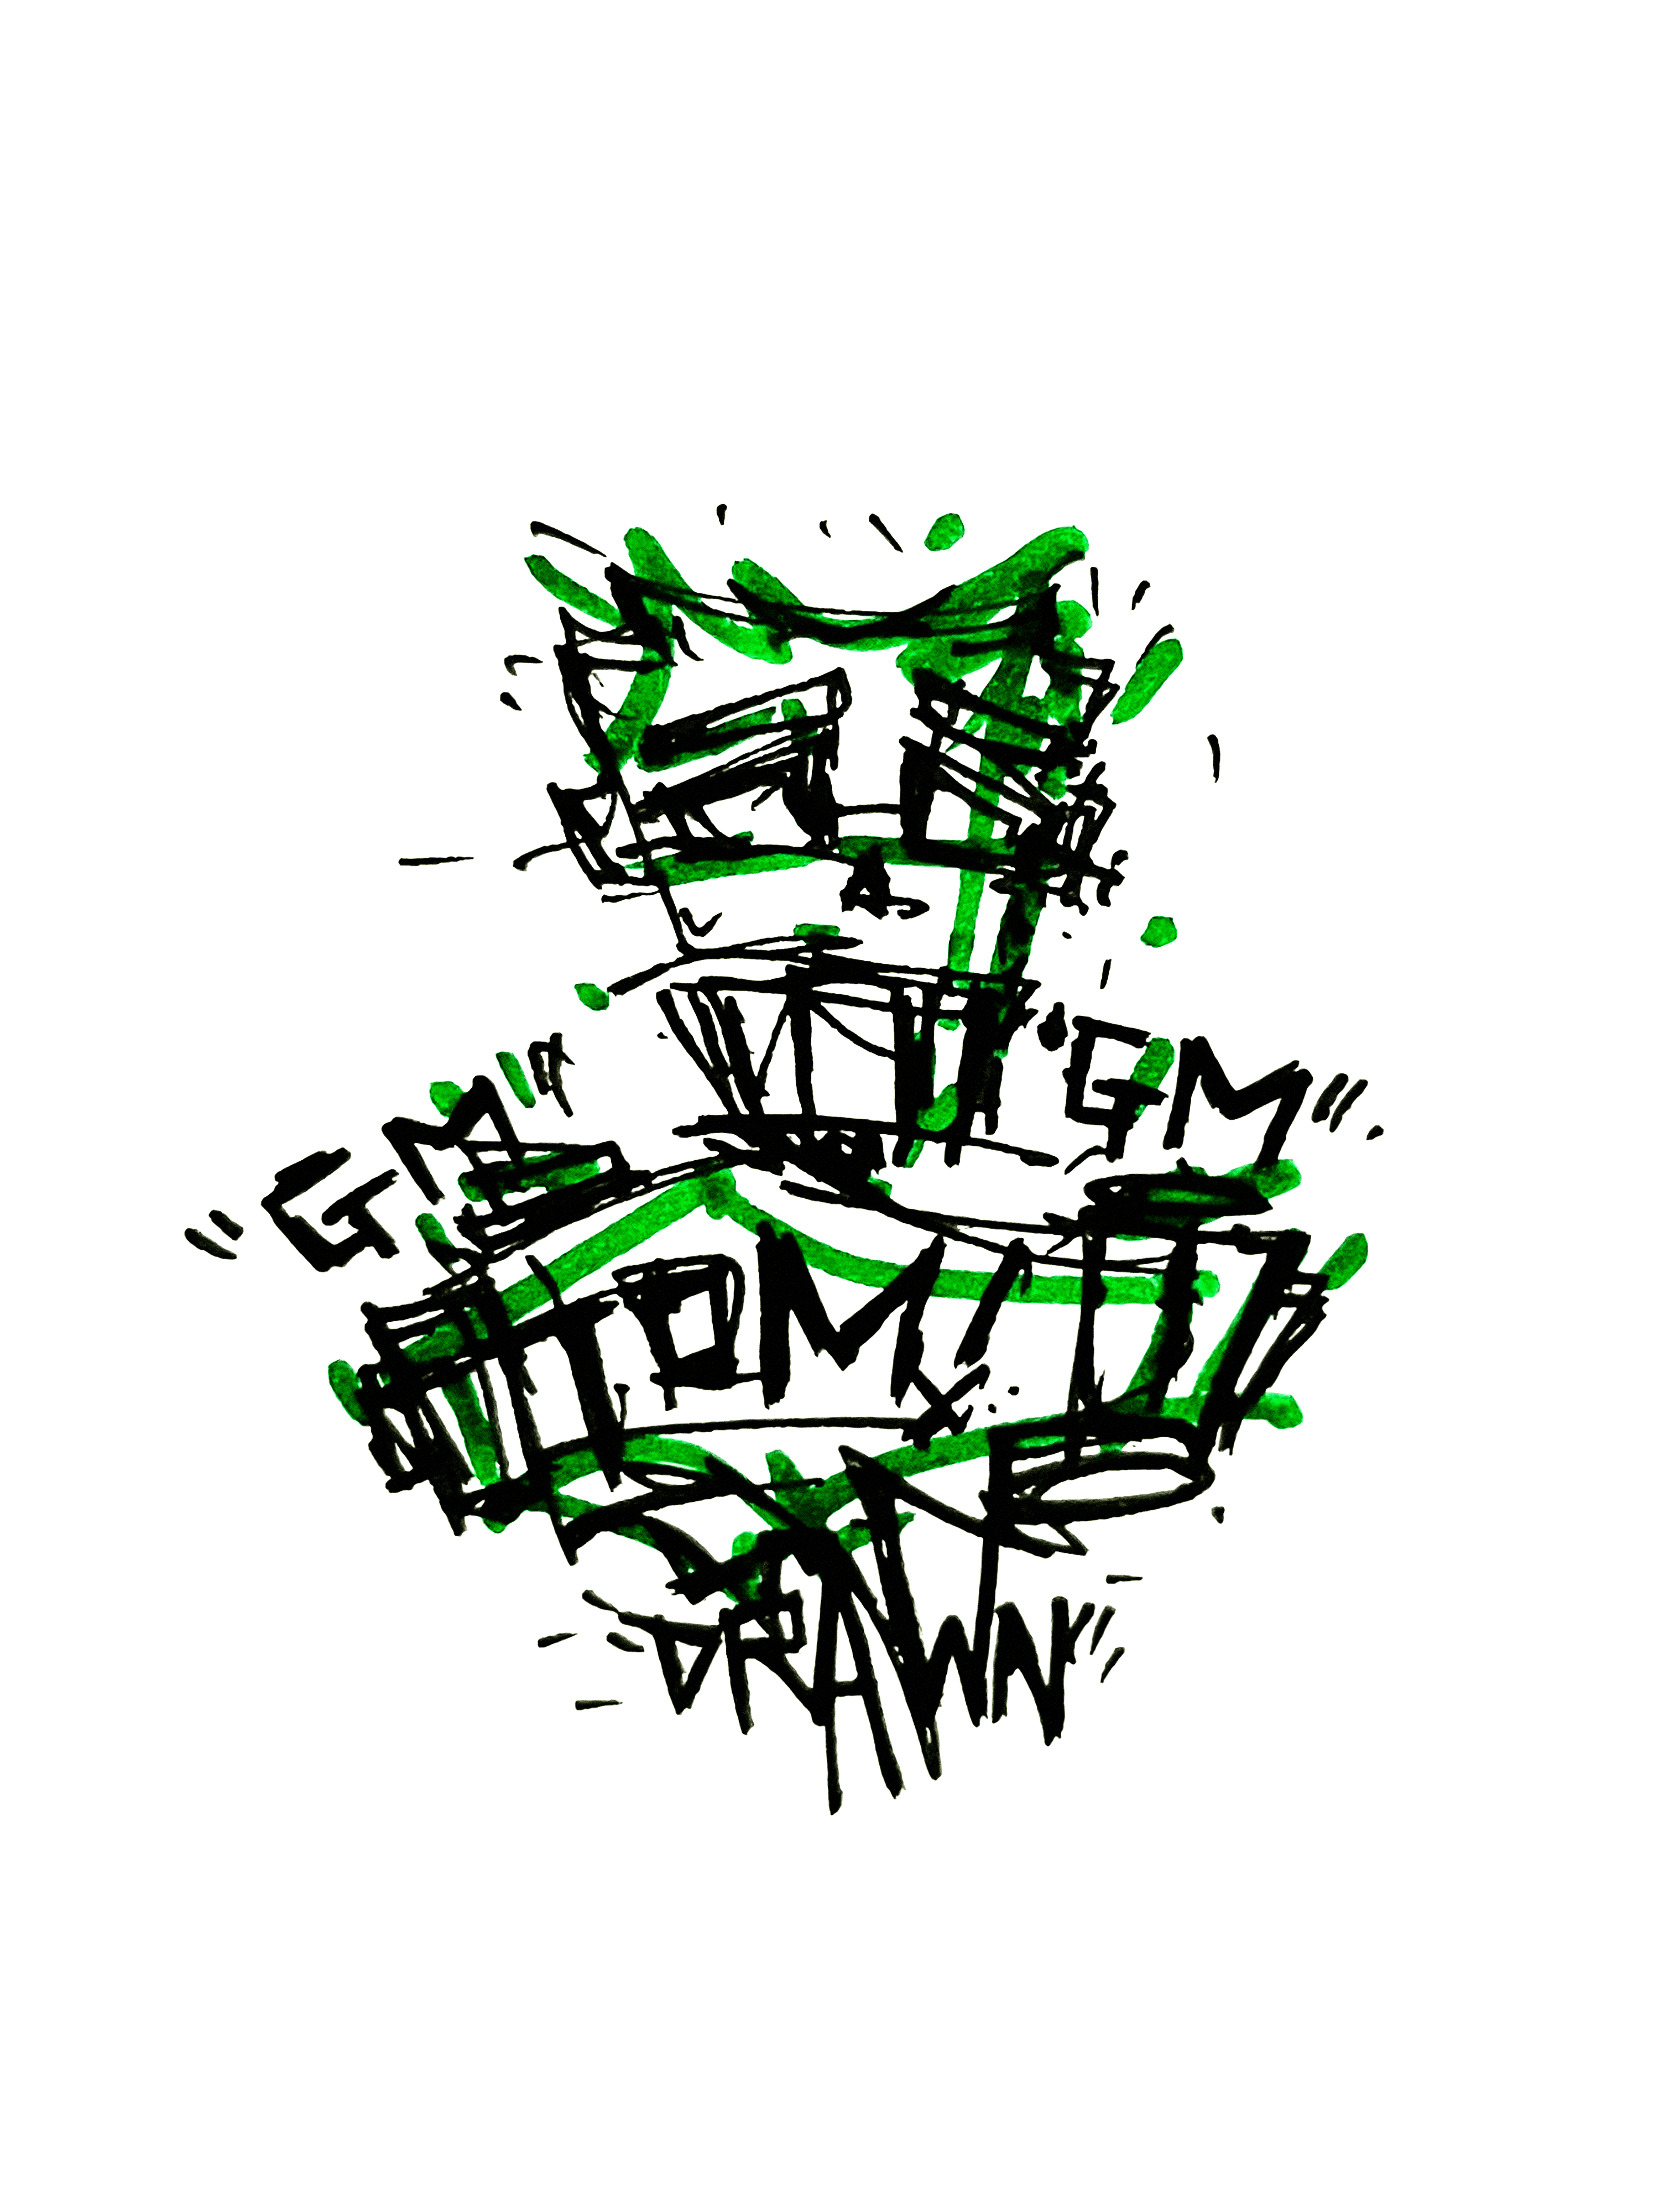 DRAWN / gm - TOM